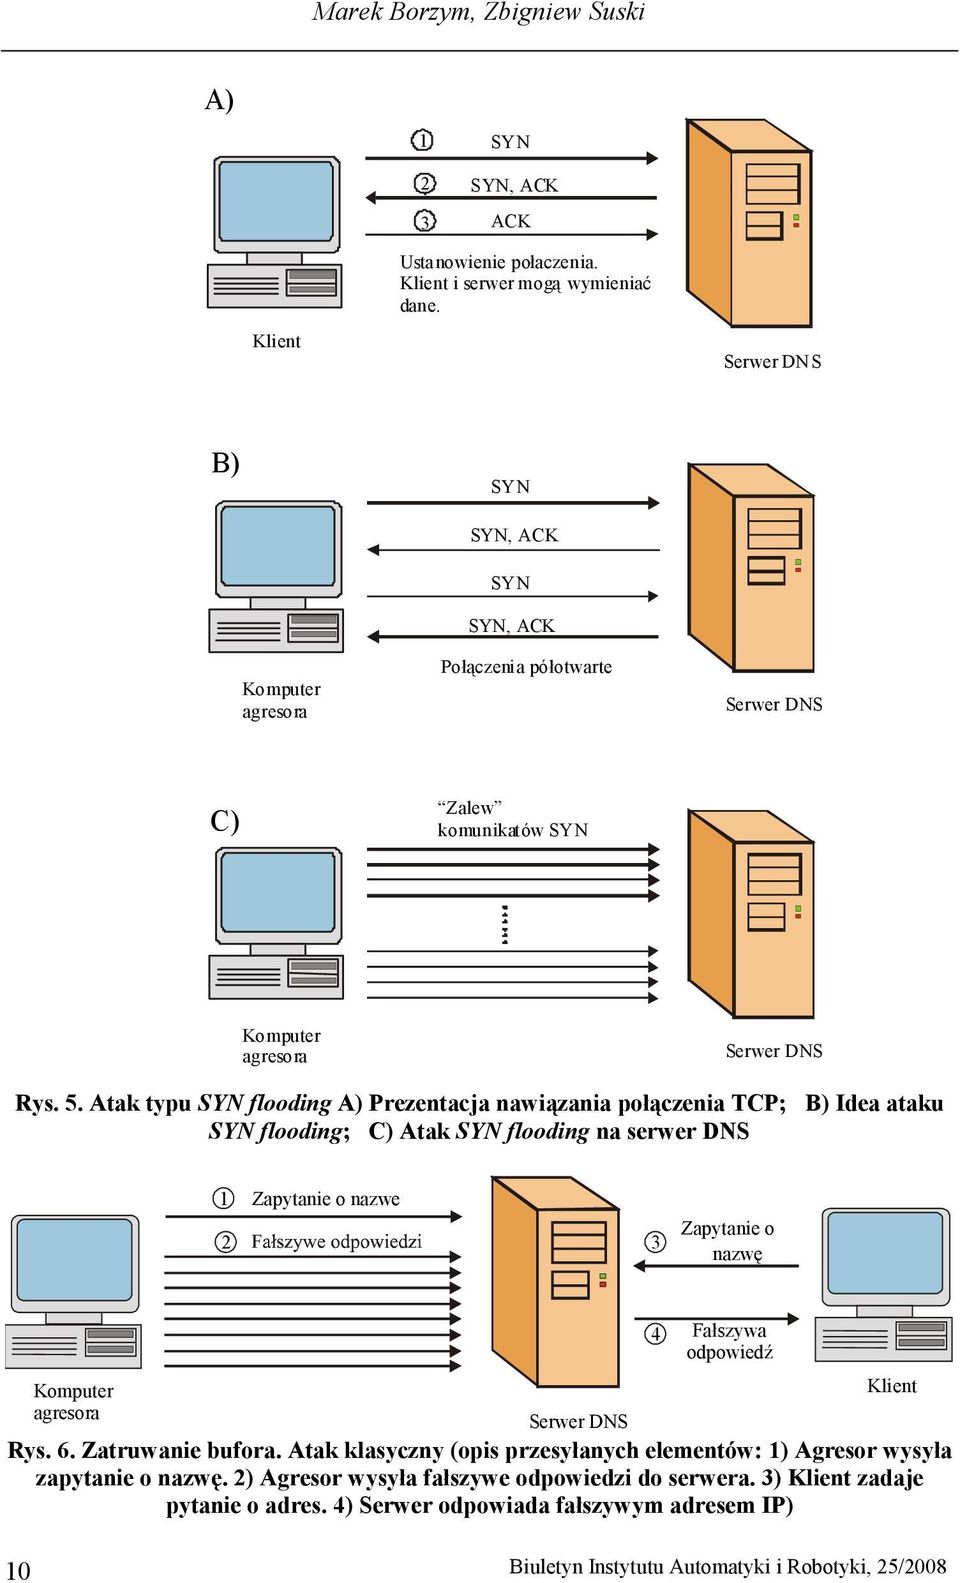 Atak typu SYN flooding A) Prezentacja nawiązania połączenia TCP; B) Idea ataku SYN flooding; C) Atak SYN flooding na serwer DNS 1 Zapytanie o nazwe 2 3 Zapytanie o nazwę 4 Fałszywa odpowiedź